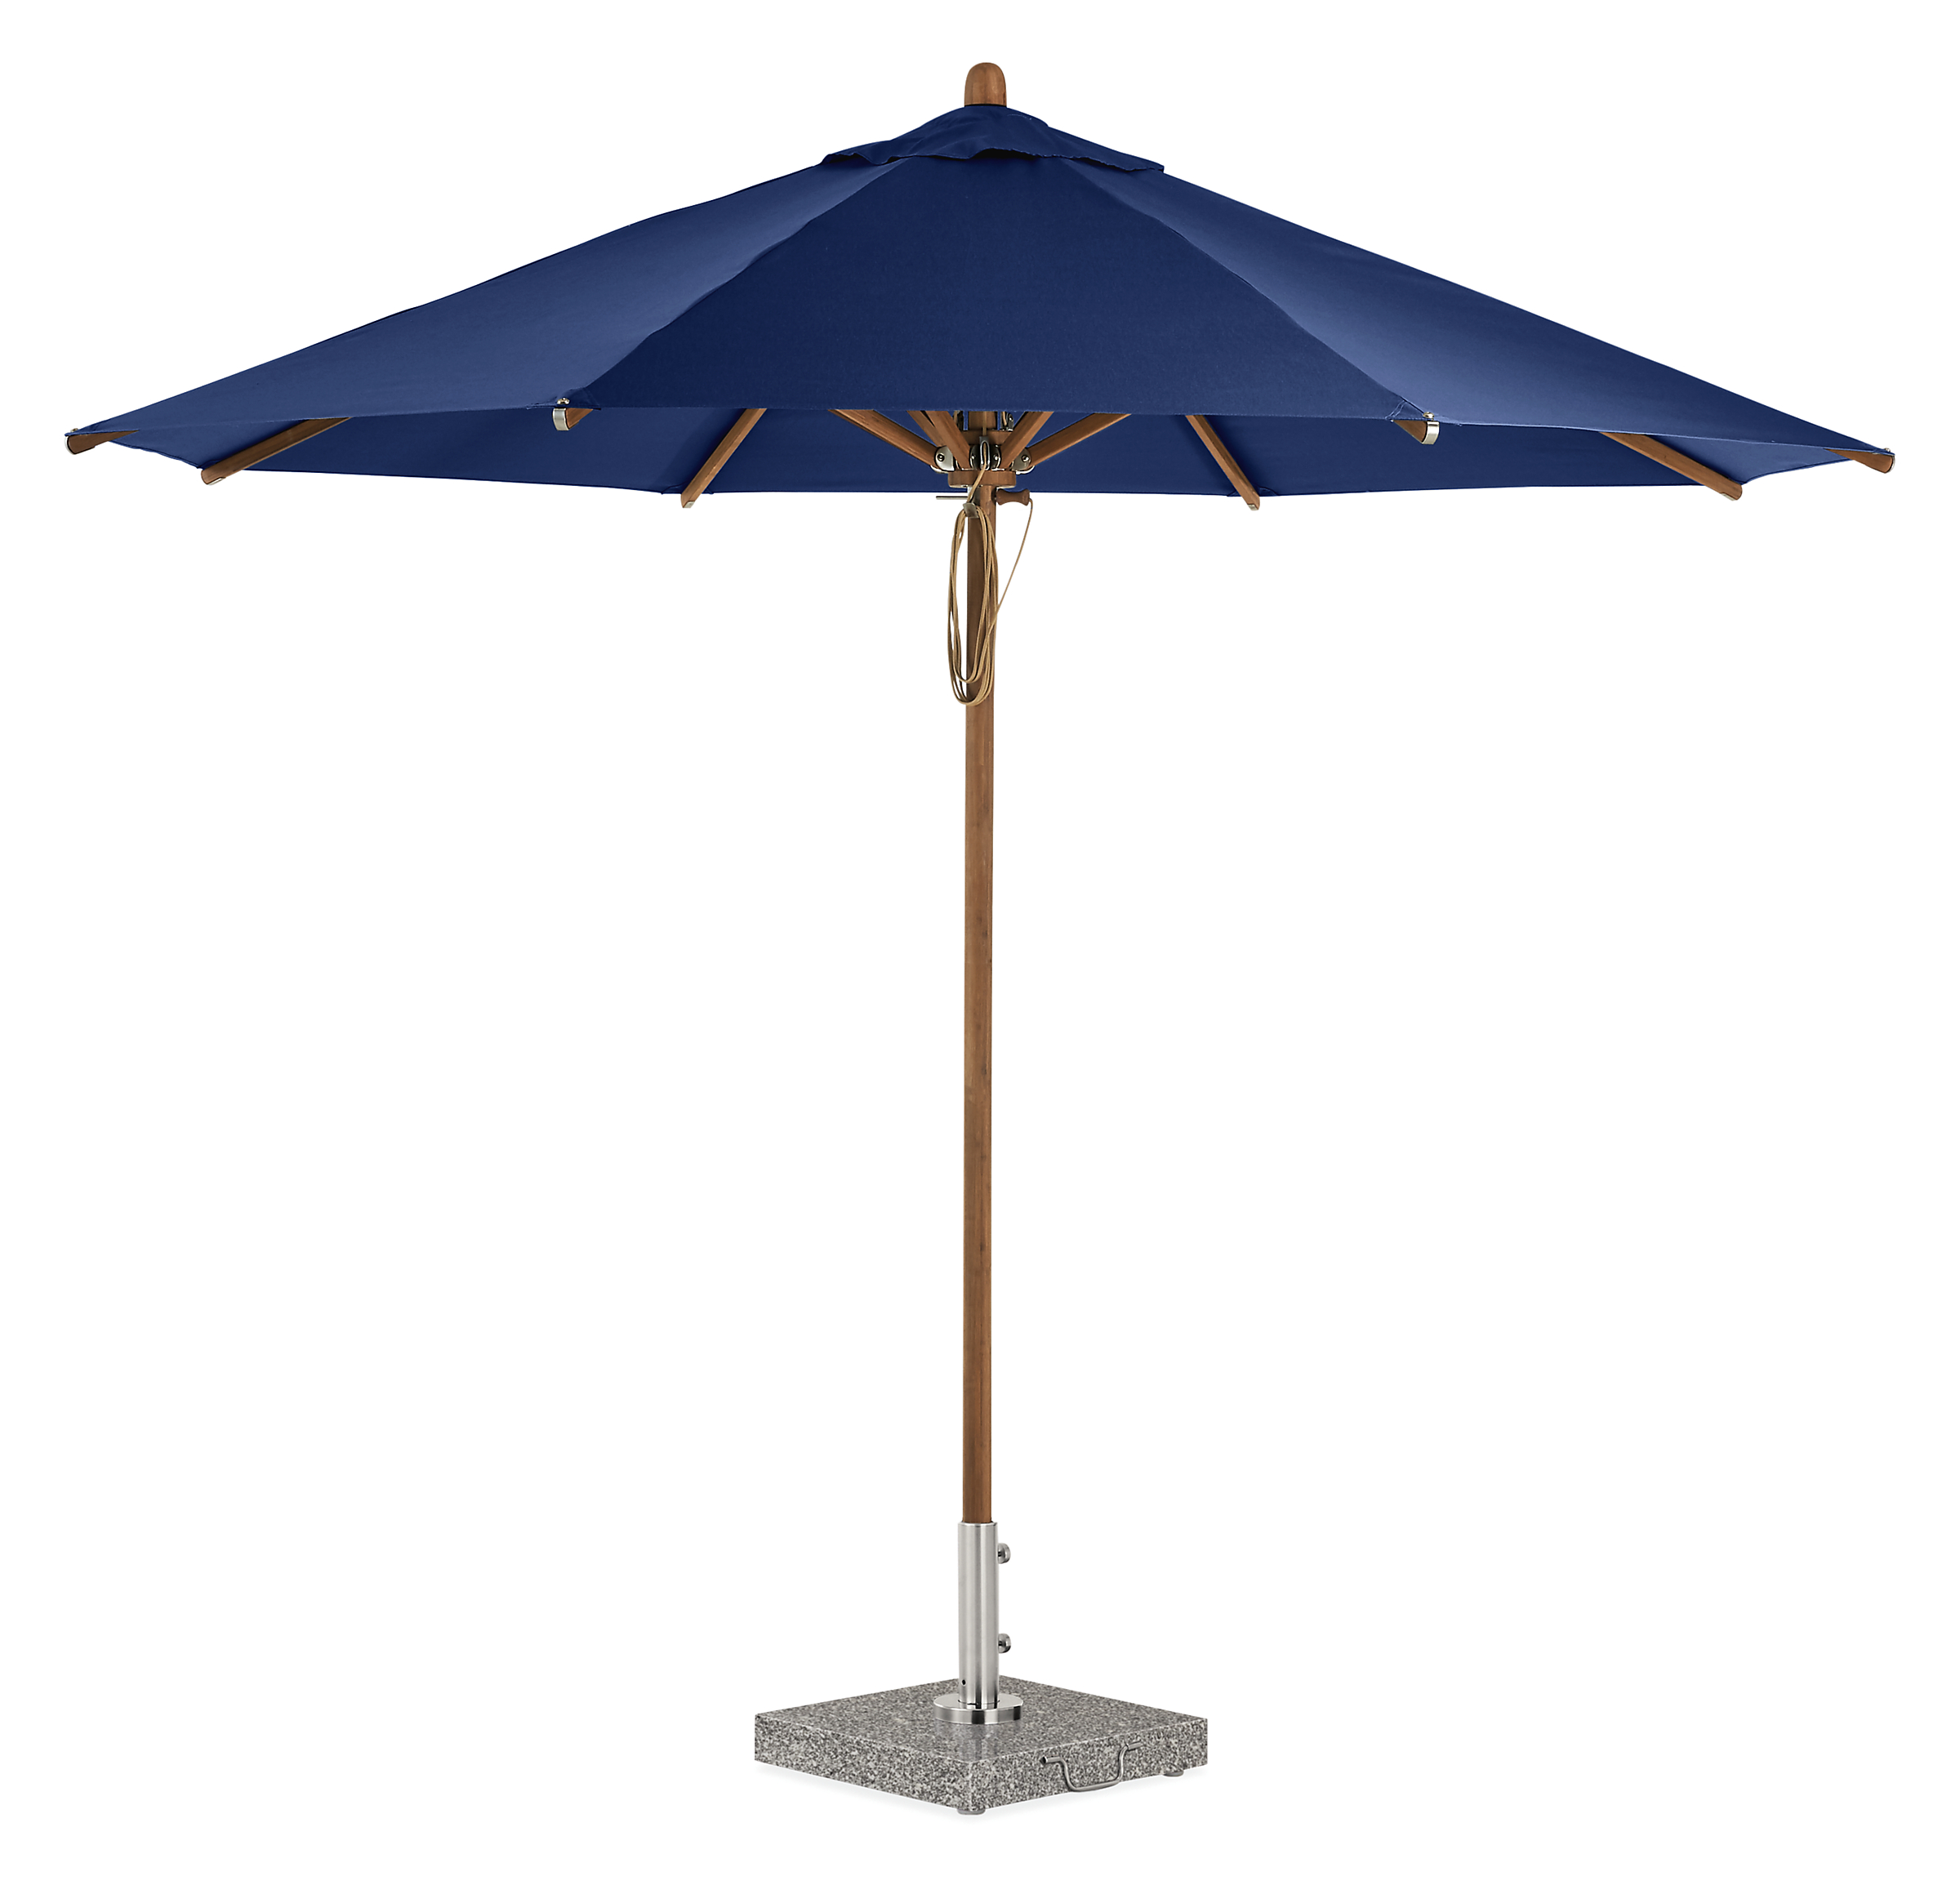 Cirro 10' Patio Umbrella in Navy with Bamboo Pole